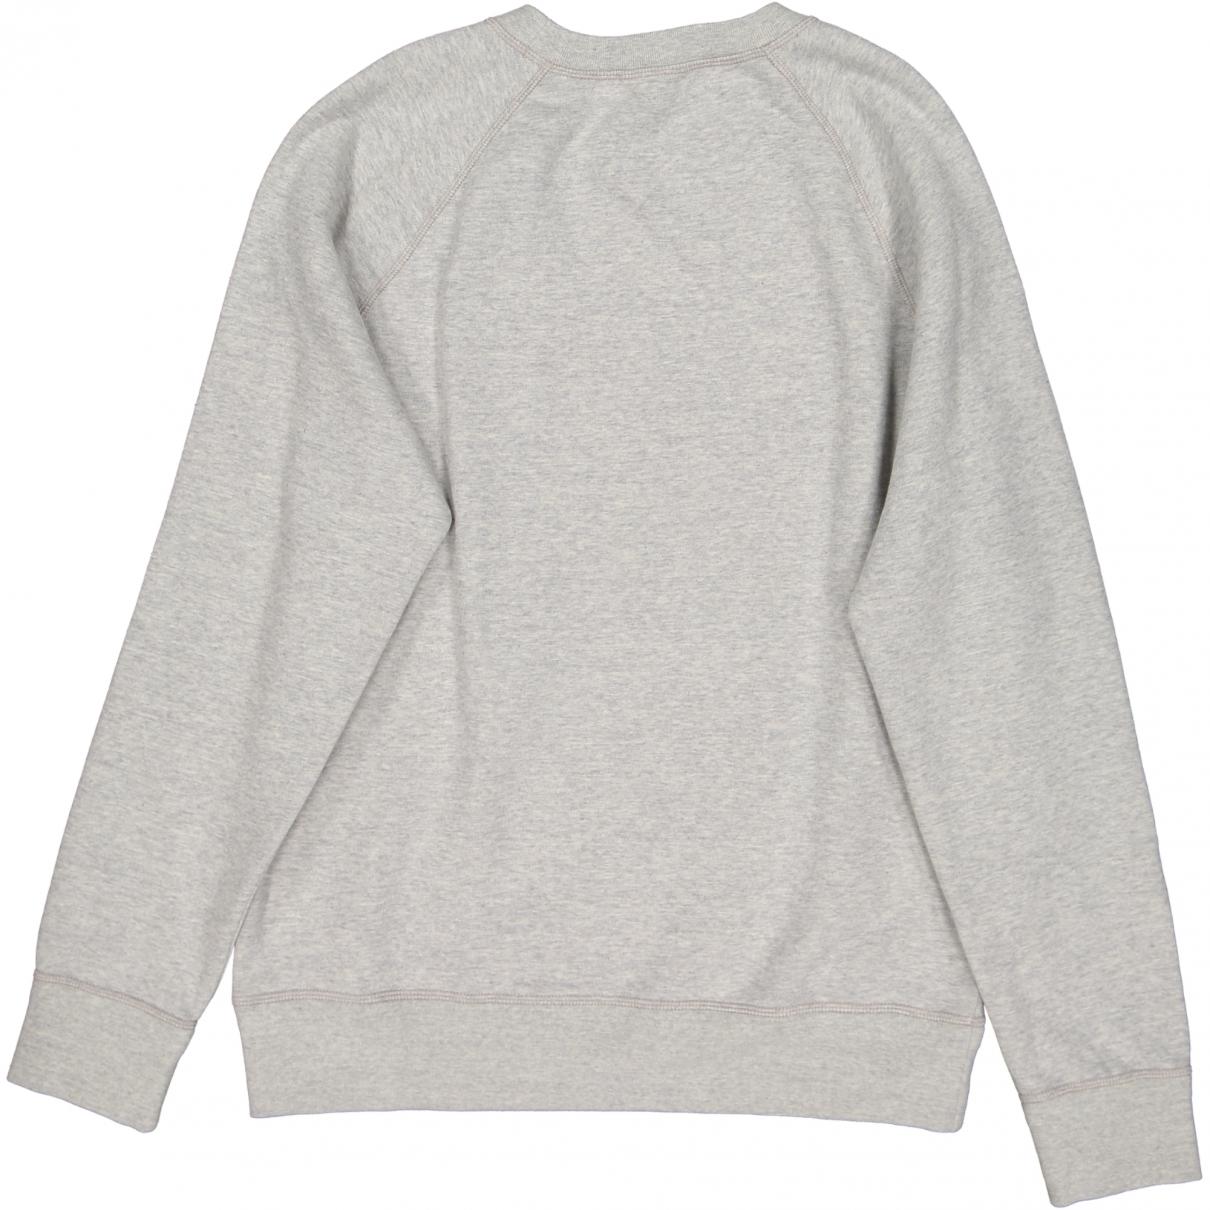 Lyst - Louis Vuitton Grey Cotton Knitwear & Sweatshirts in Gray for Men